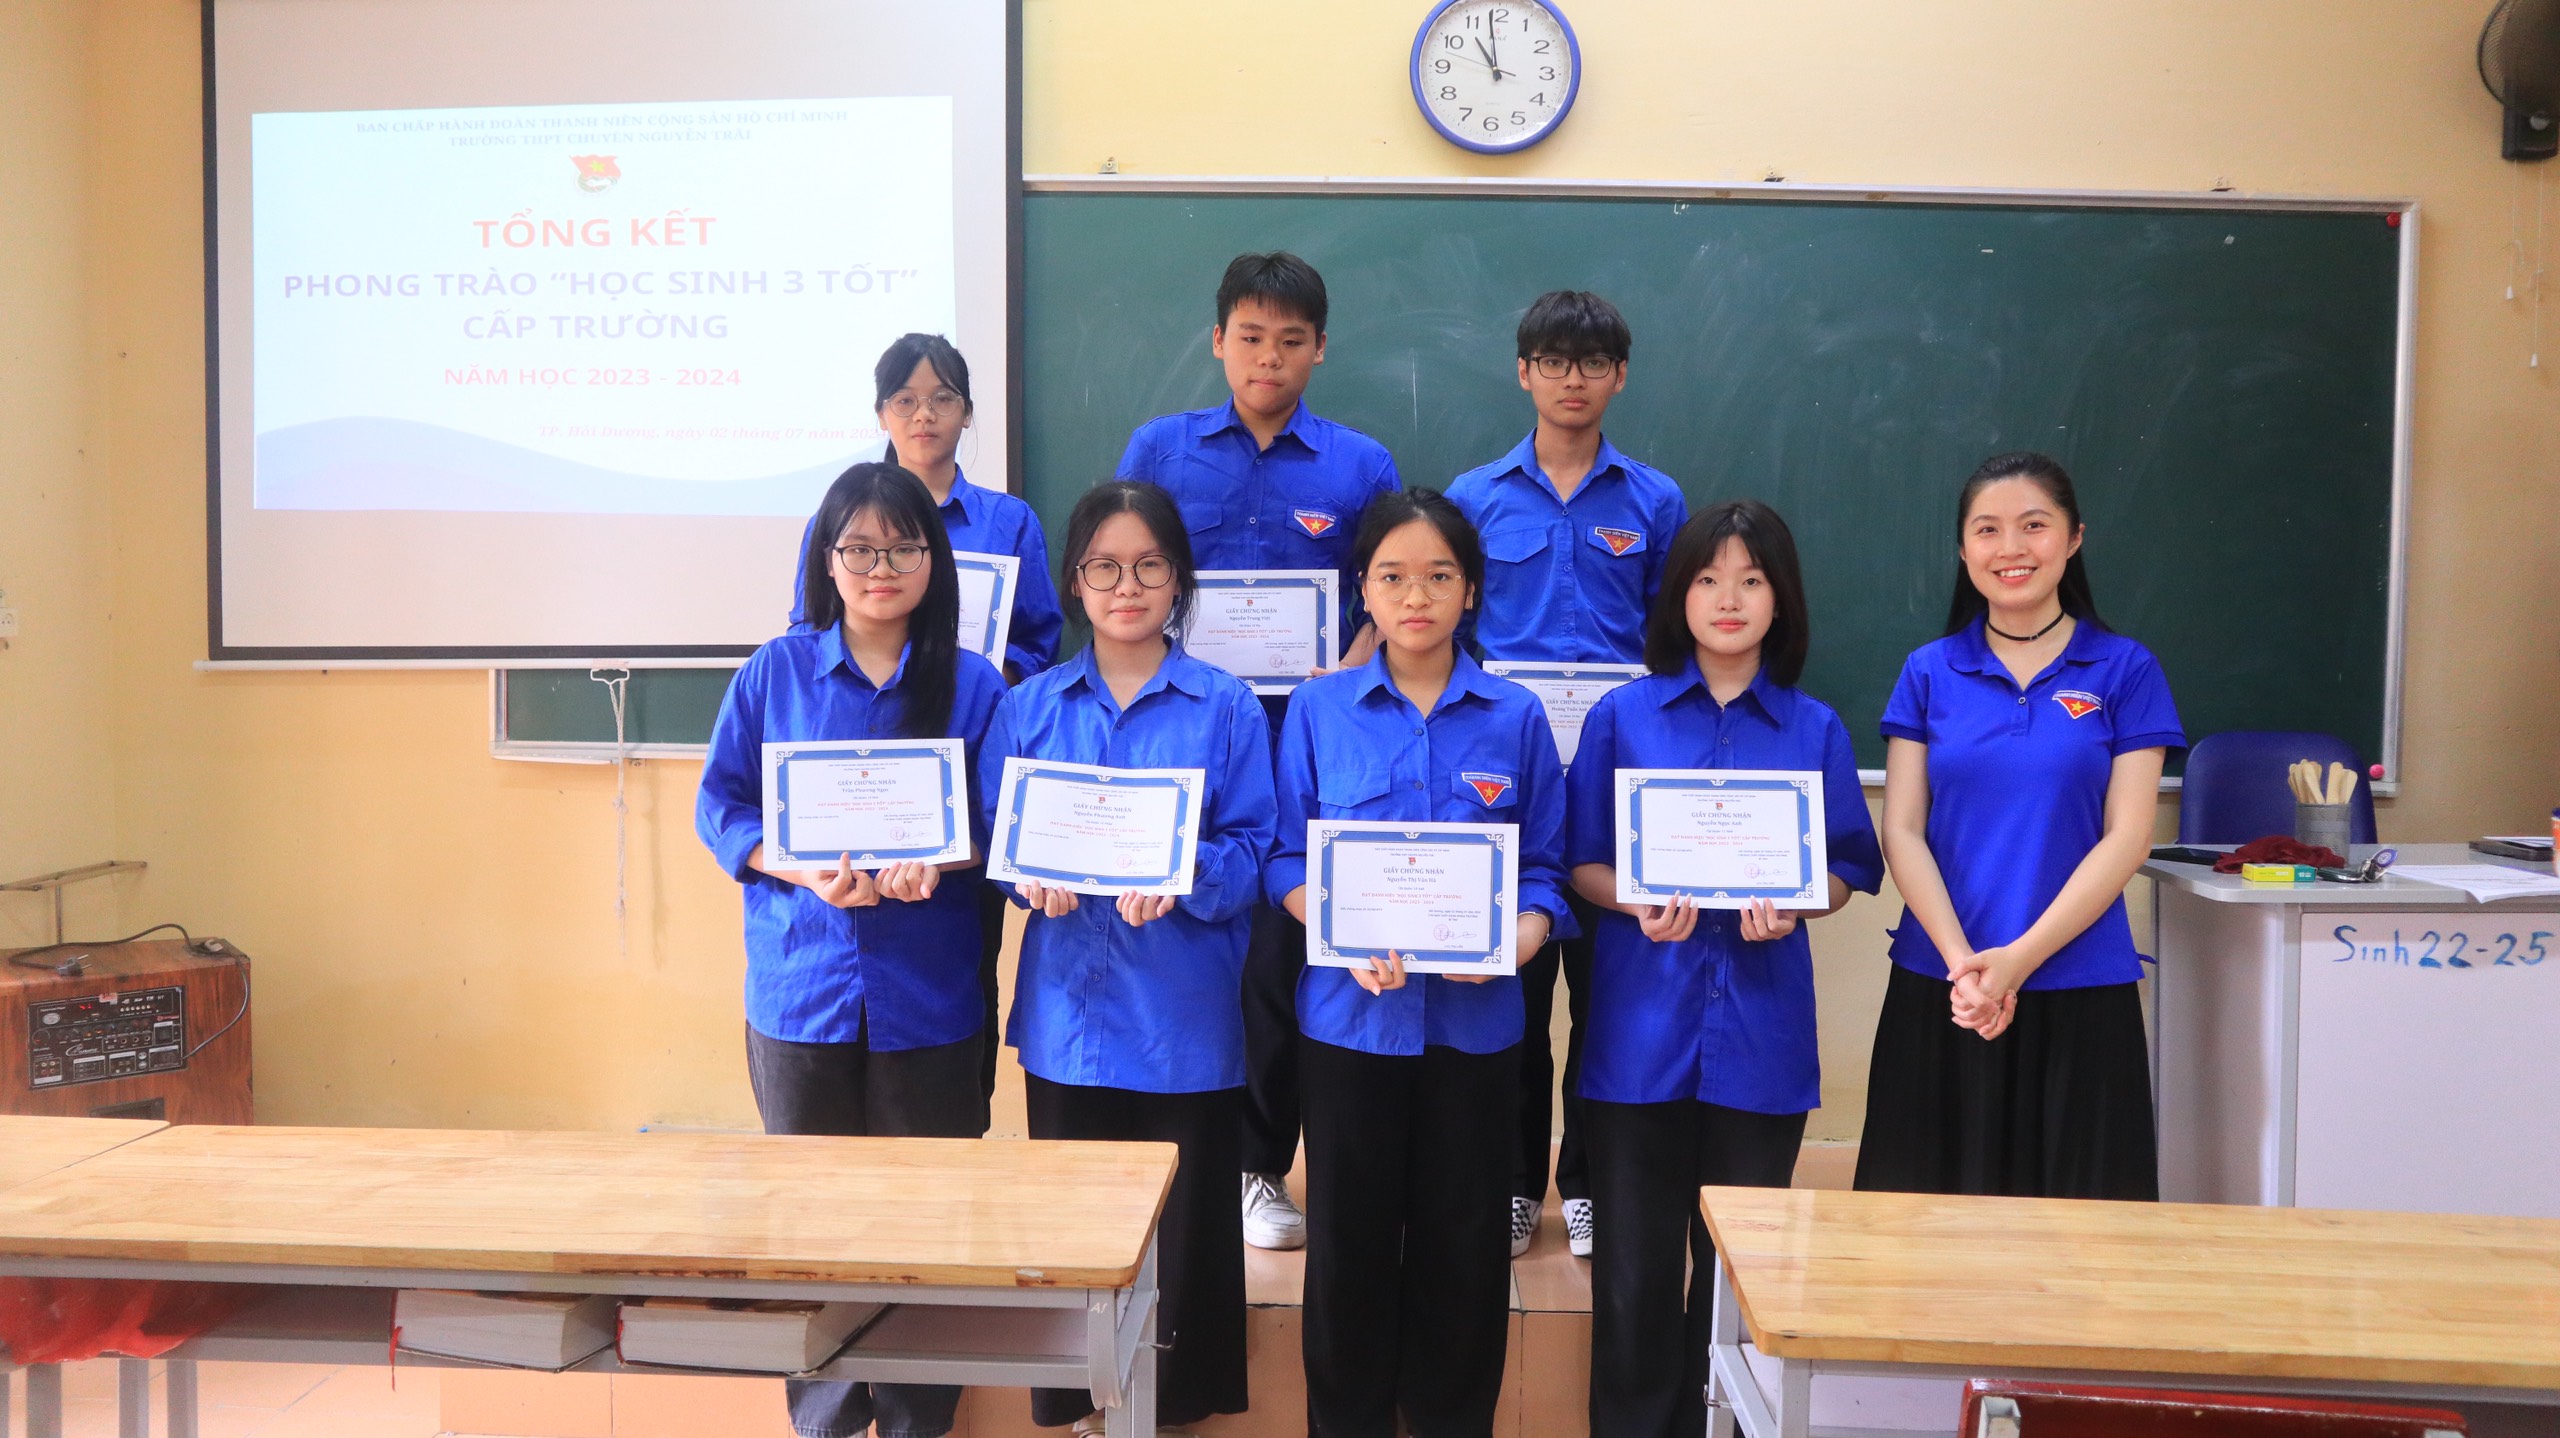 Đoàn trường THPT chuyên Nguyễn Trãi tổng kết phong trào "Học sinh 3 tốt" cấp trường năm học 2023 - 2024